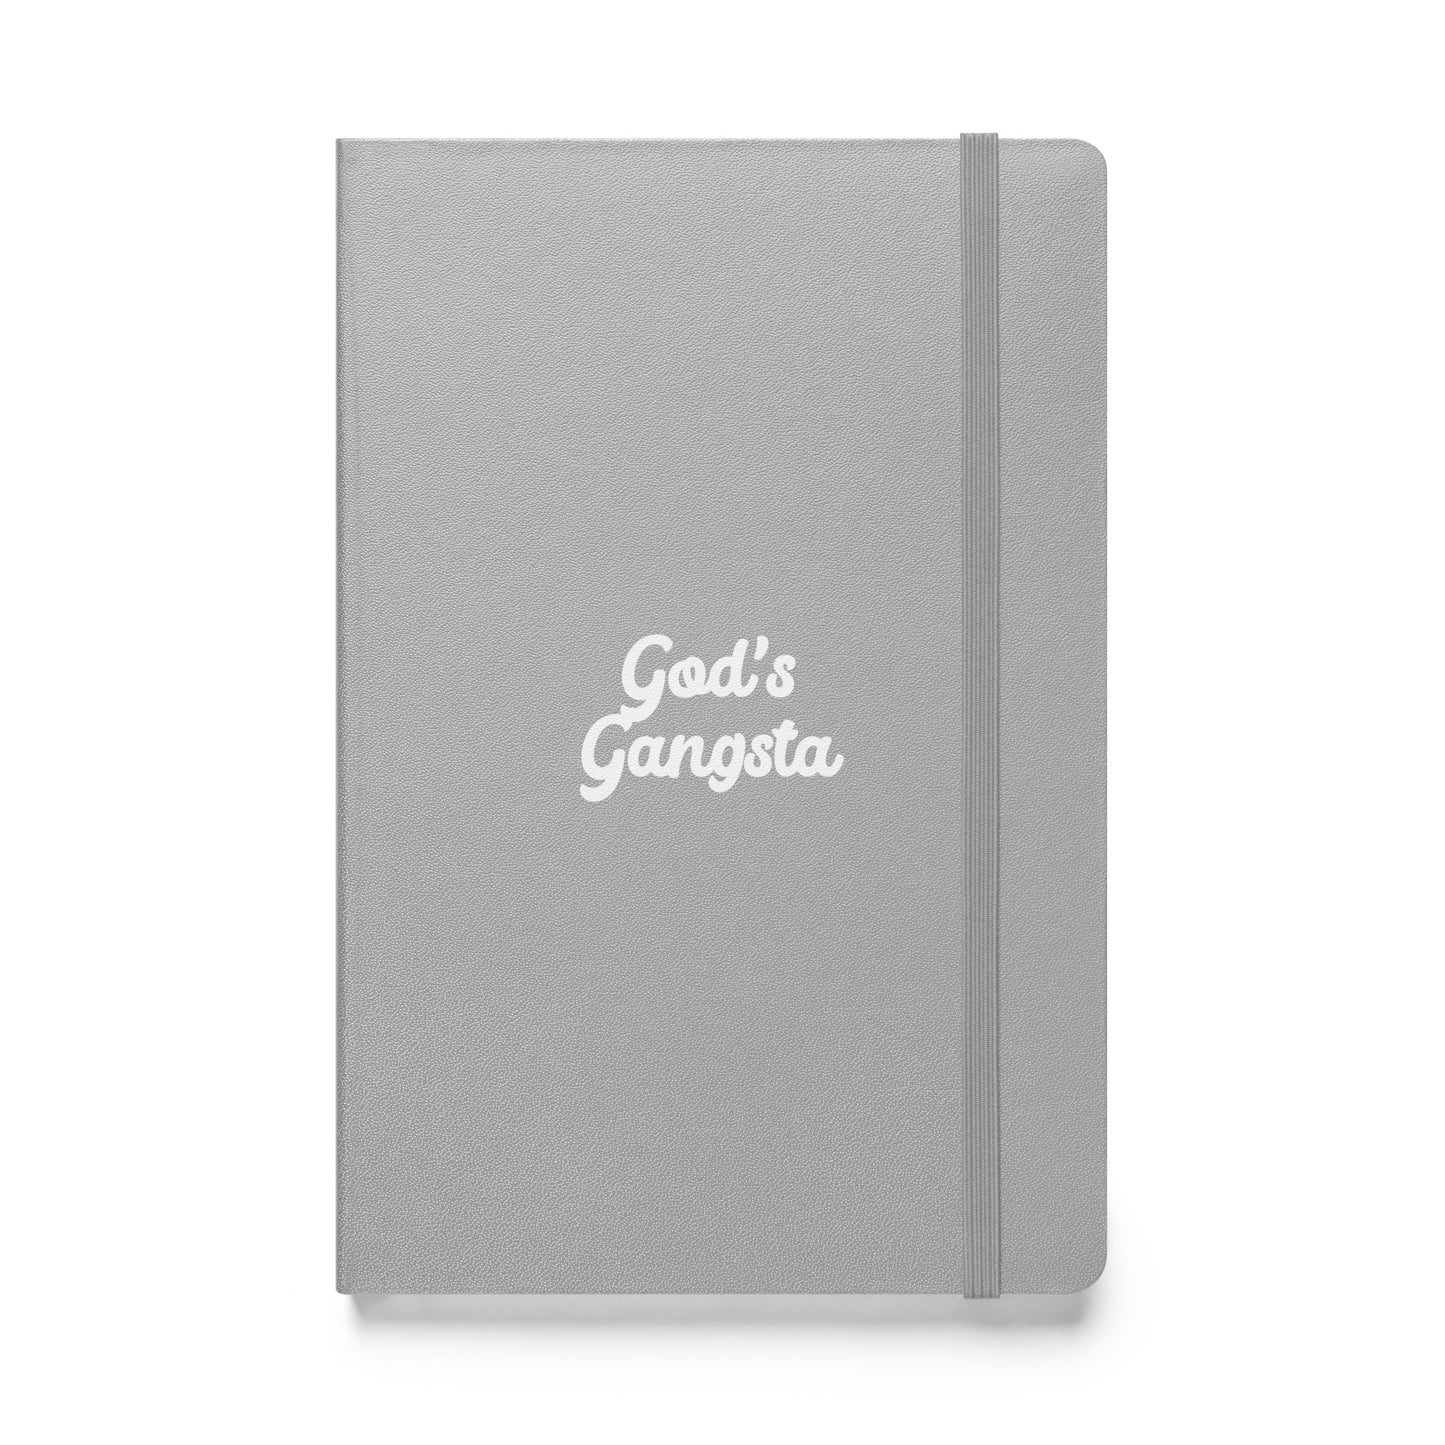 God's Gangsta bound notebook